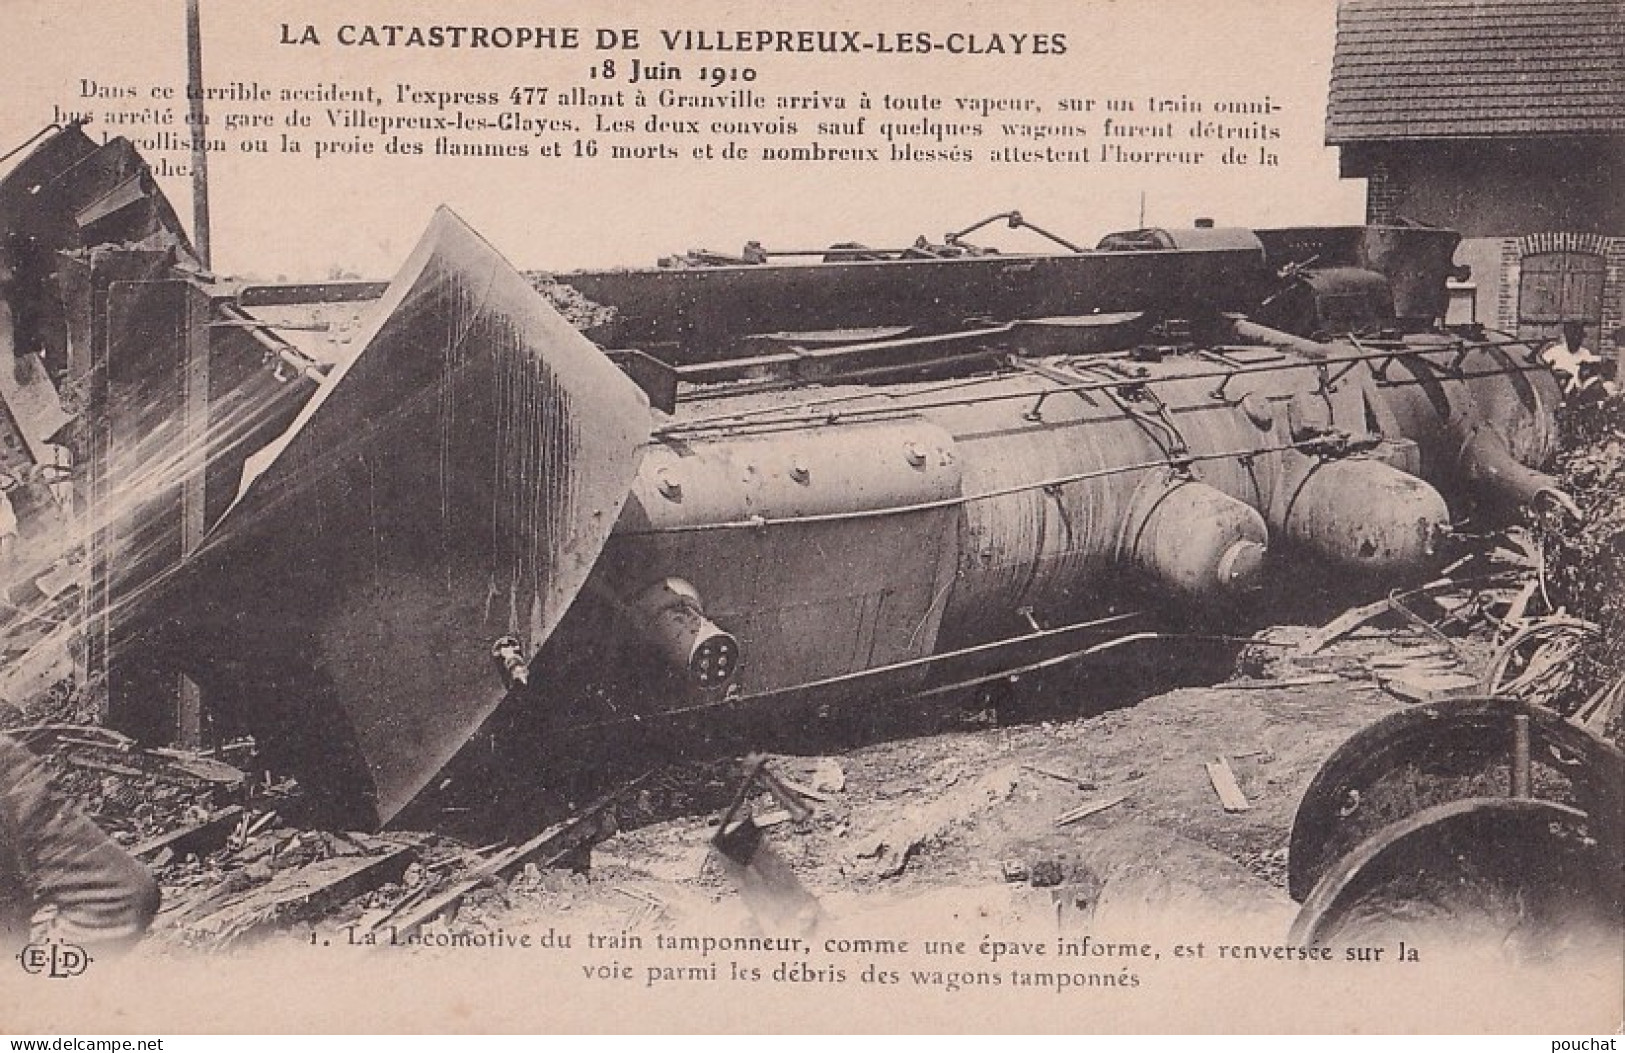 78) CLAYES SOUS BOIS - 18 JUIN 1910 - LA CATASTROPHE DE VILLEPREUX LES CLAYES - ACCIDENT - TRAIN - GARE - ( 2 SCANS ) - Villepreux